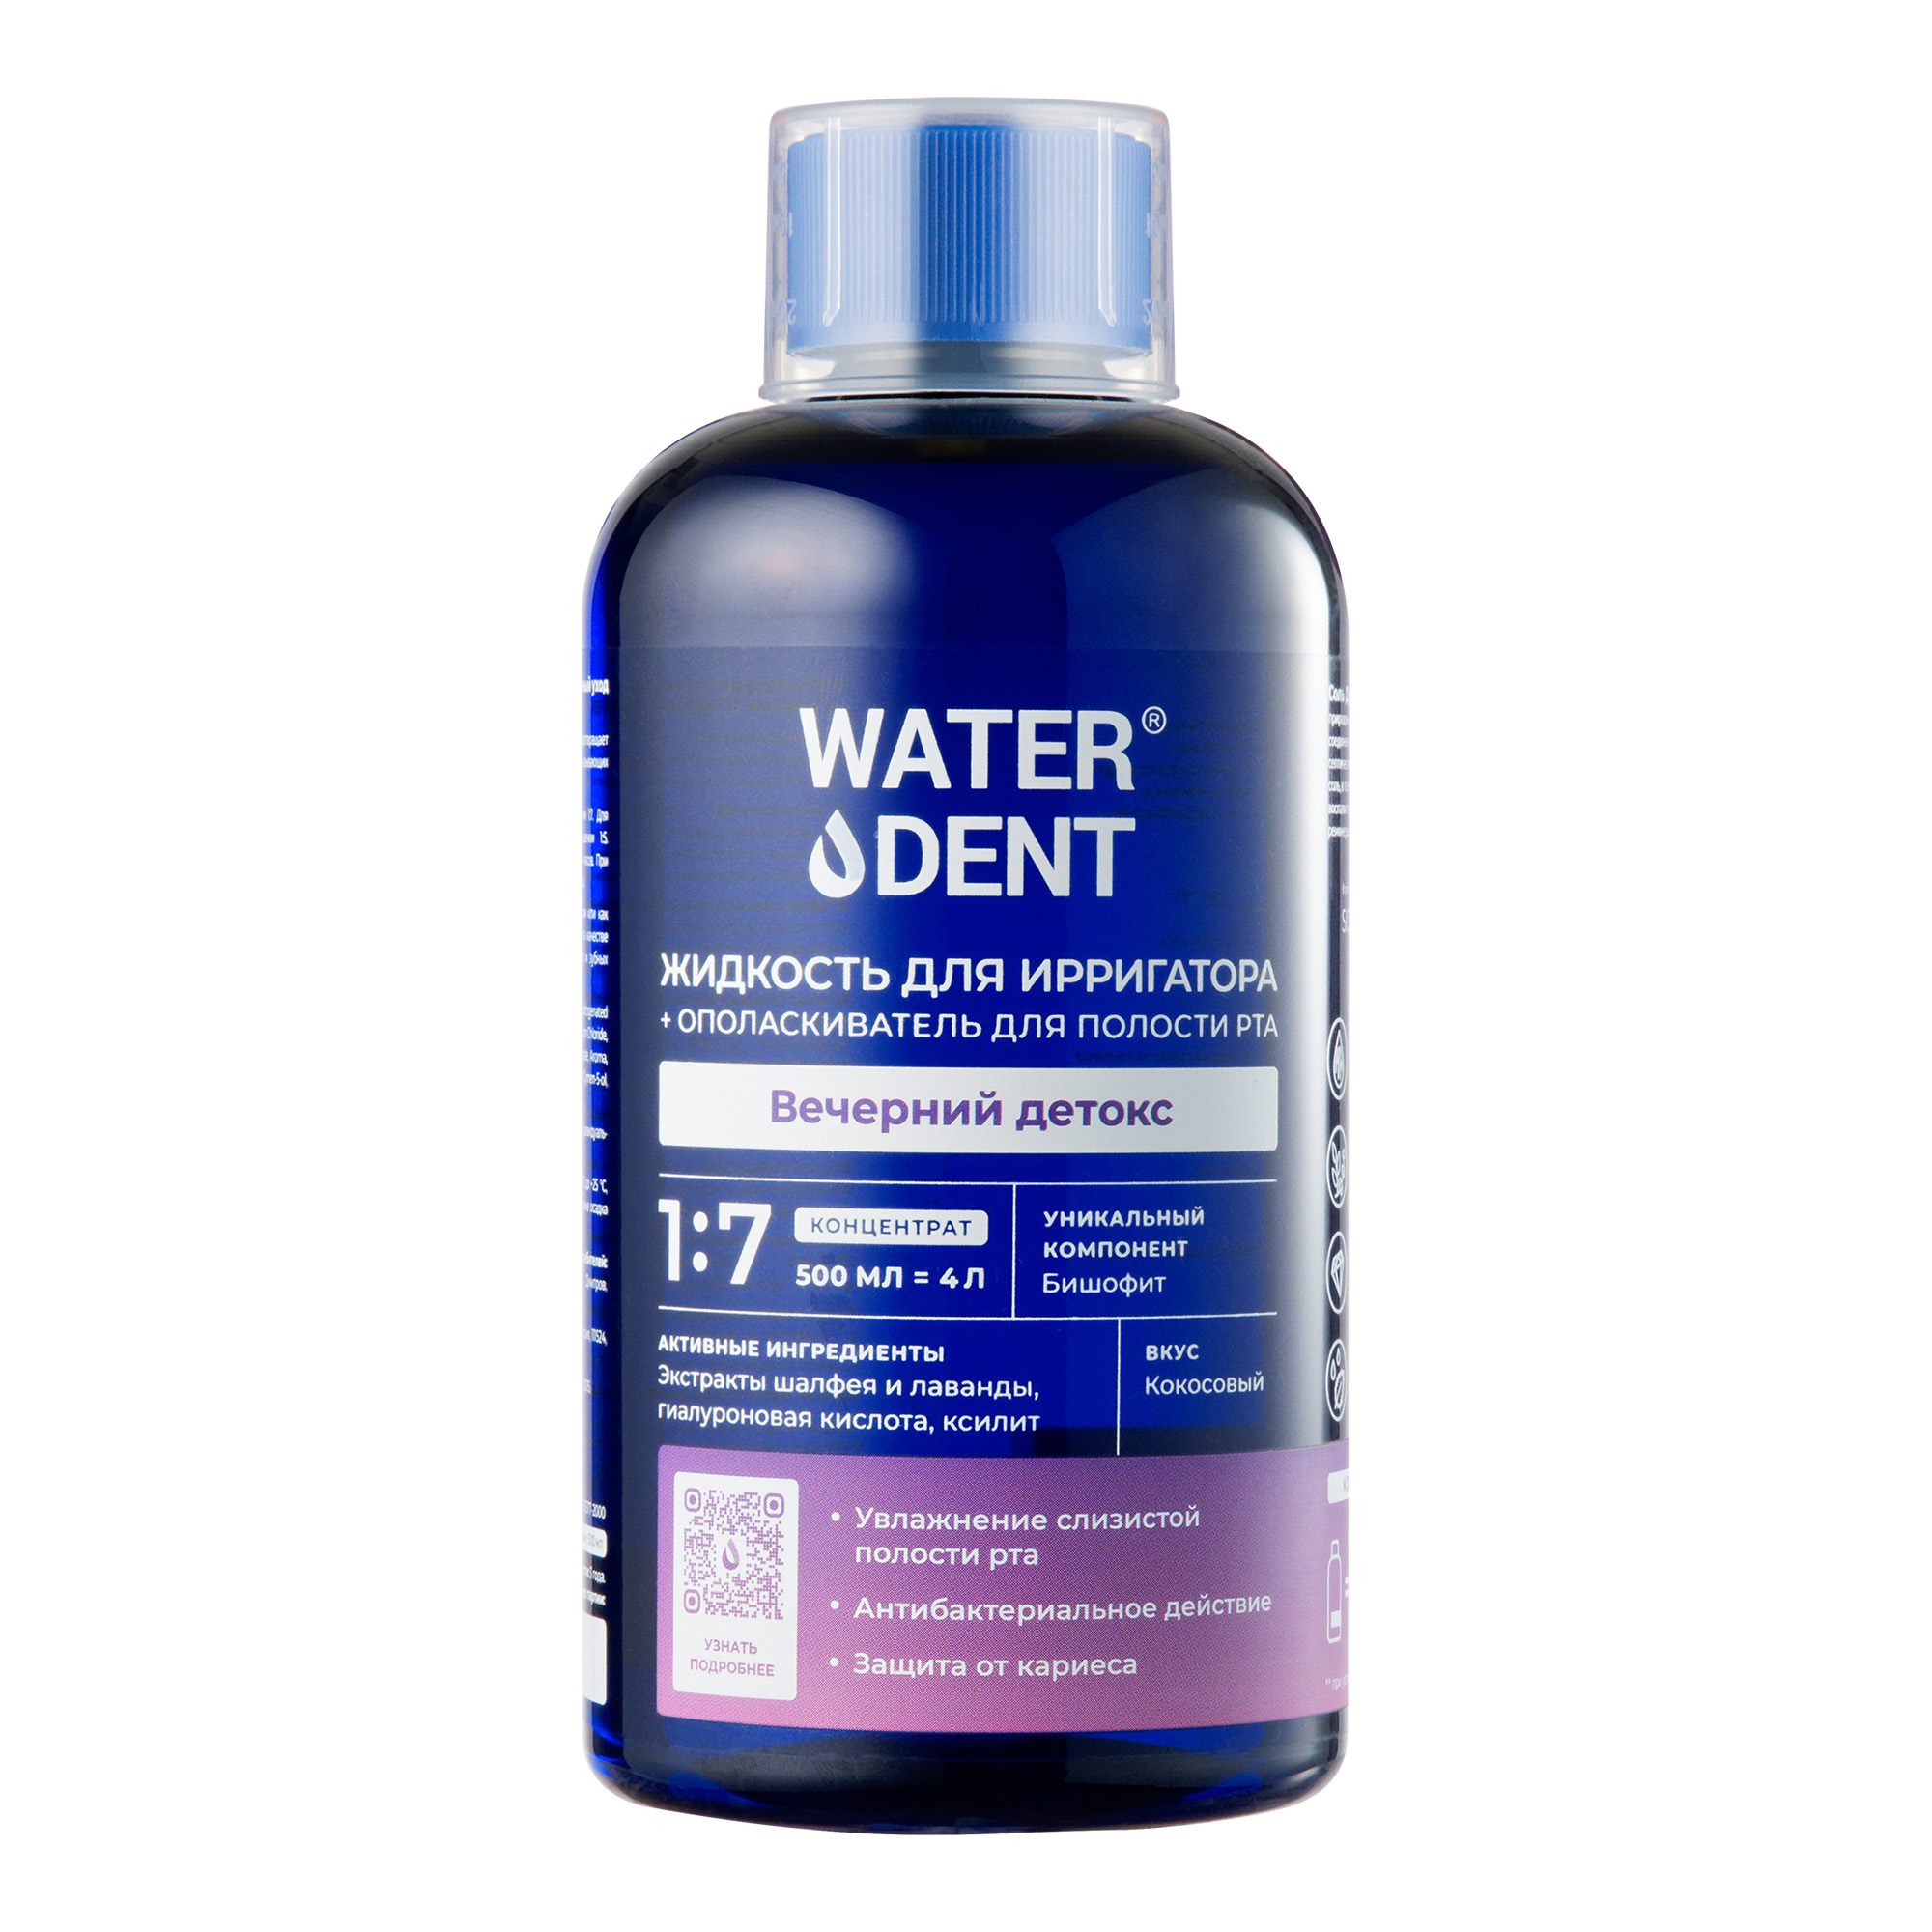 Waterdent, жидкость для ирригатора Вечерний детокс Кокос, флакон 500 мл waterdent жидкость для ирригатора отбеливающая 500 мл